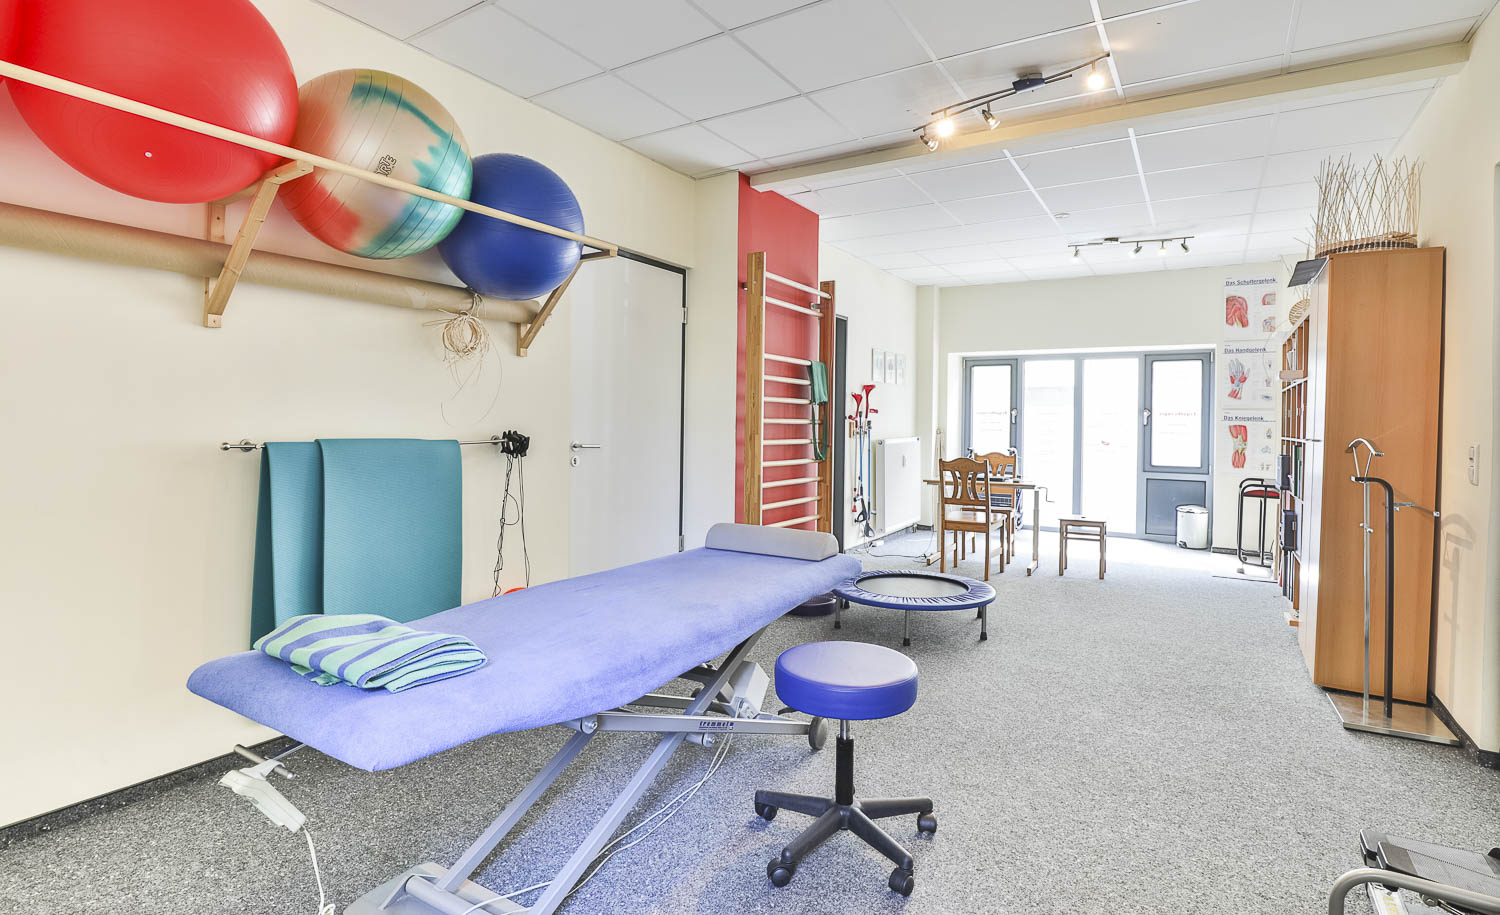 Behandlungsraum mit Liege und Gymnastikbällen bei Ergomed, Praxis für Ergotherapie und Logopädie in Hamburg Heimfeld